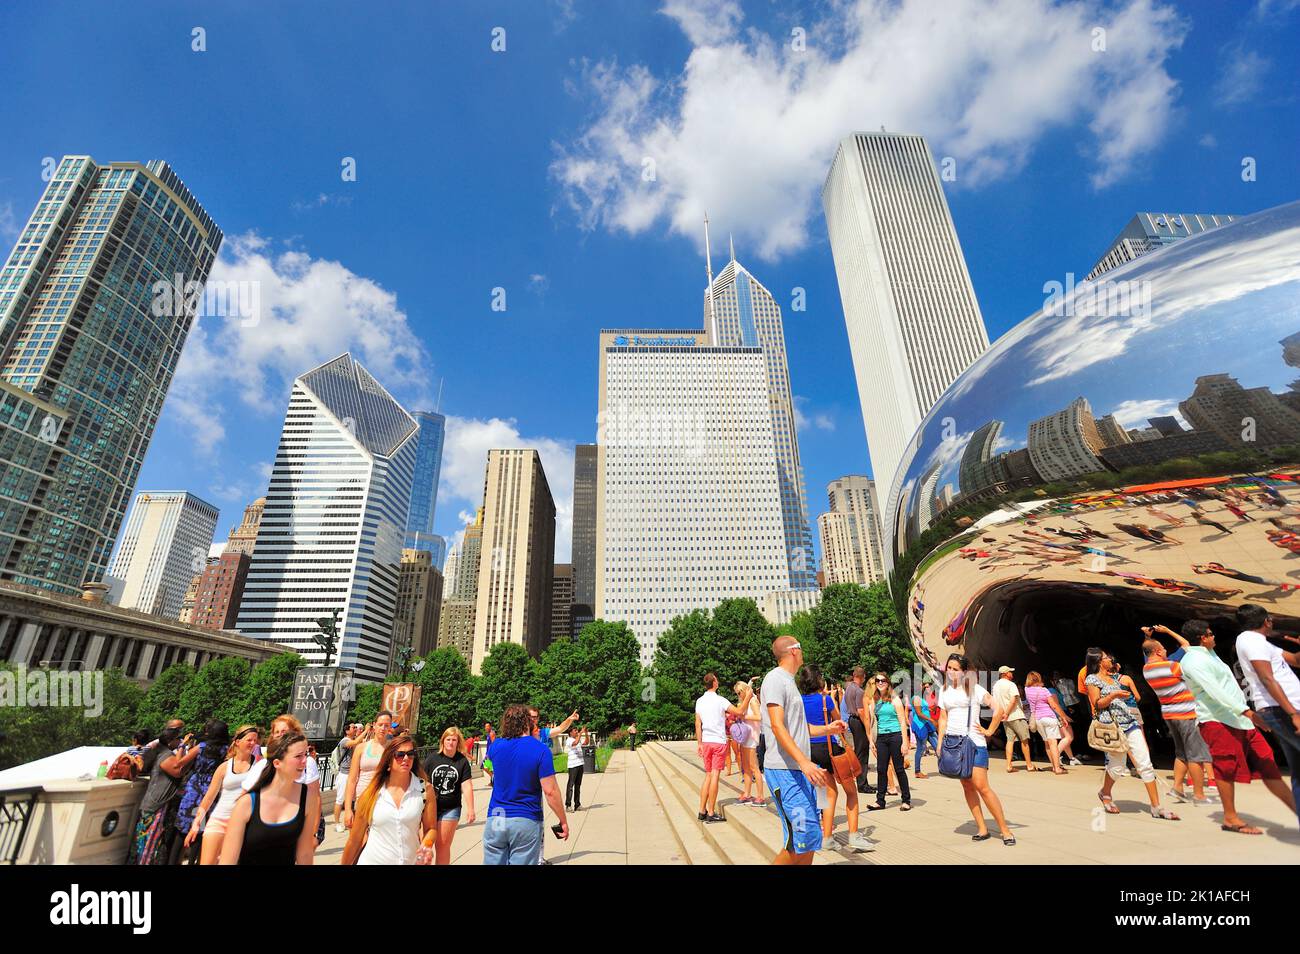 Chicago, Illinois, États-Unis. Les gens affluent vers l'une des attractions artistiques les plus populaires de la ville, la sculpture Cloud Gate dans Millennium Park. Banque D'Images